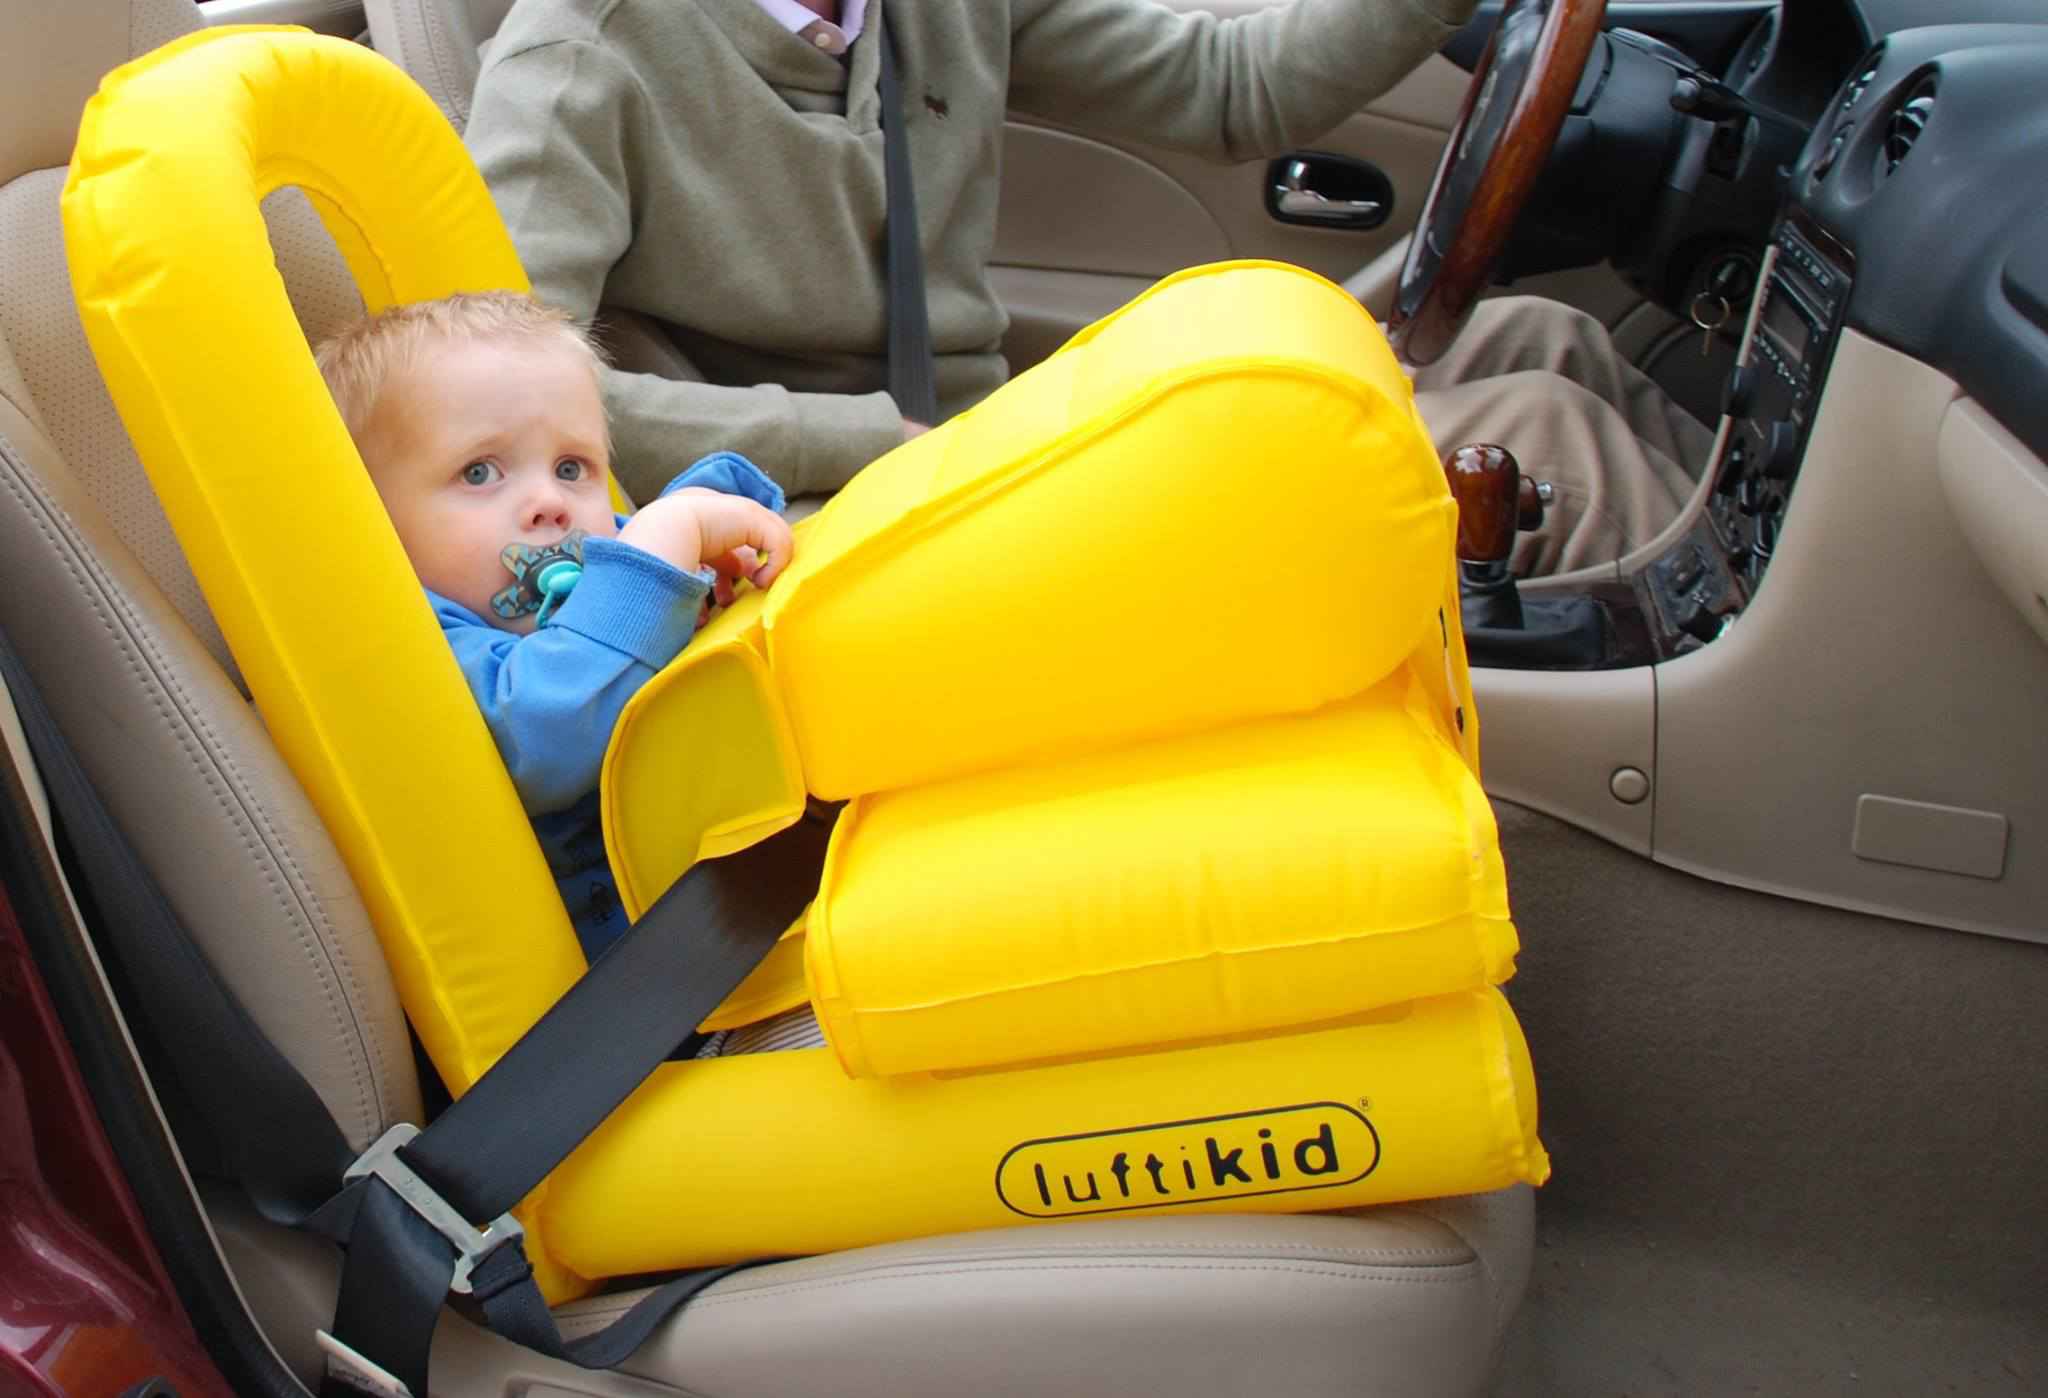 Luftikid, l'étonnant siège auto gonflable qui agit comme un airbag 